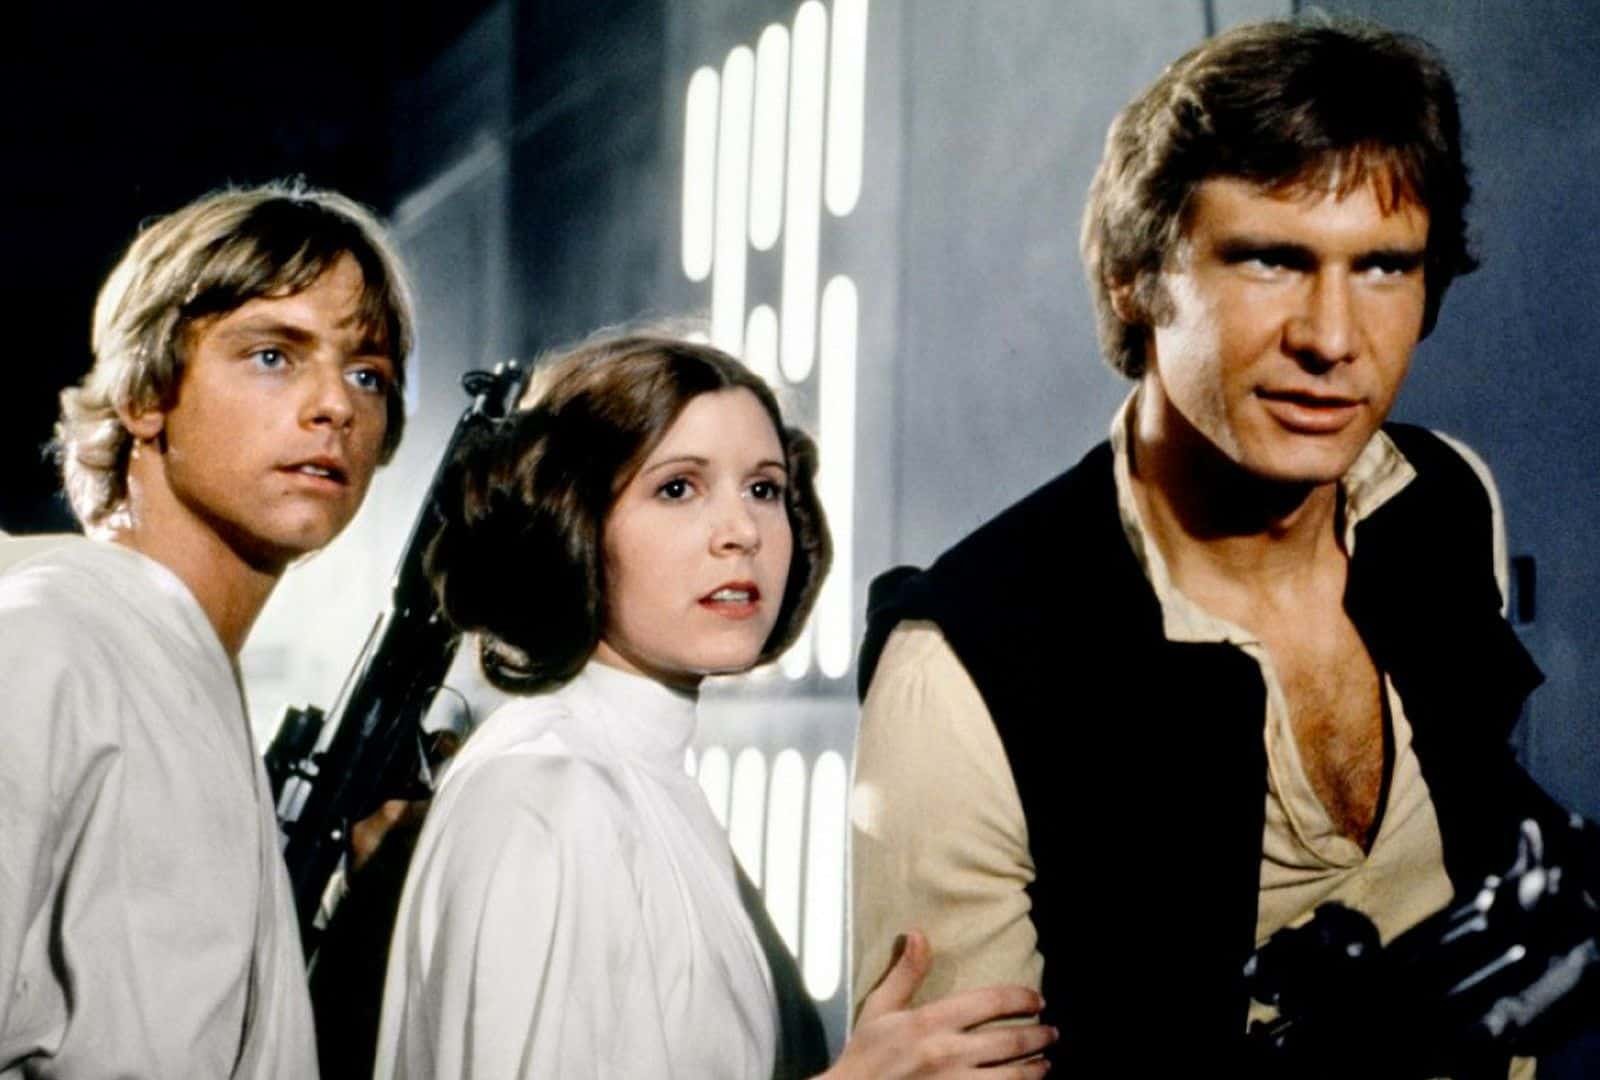 Luke Skywalker, la princesse Leia et Han Solo dans "Un nouvel espoir", réunis dans un moment tendu sur fond futuriste.